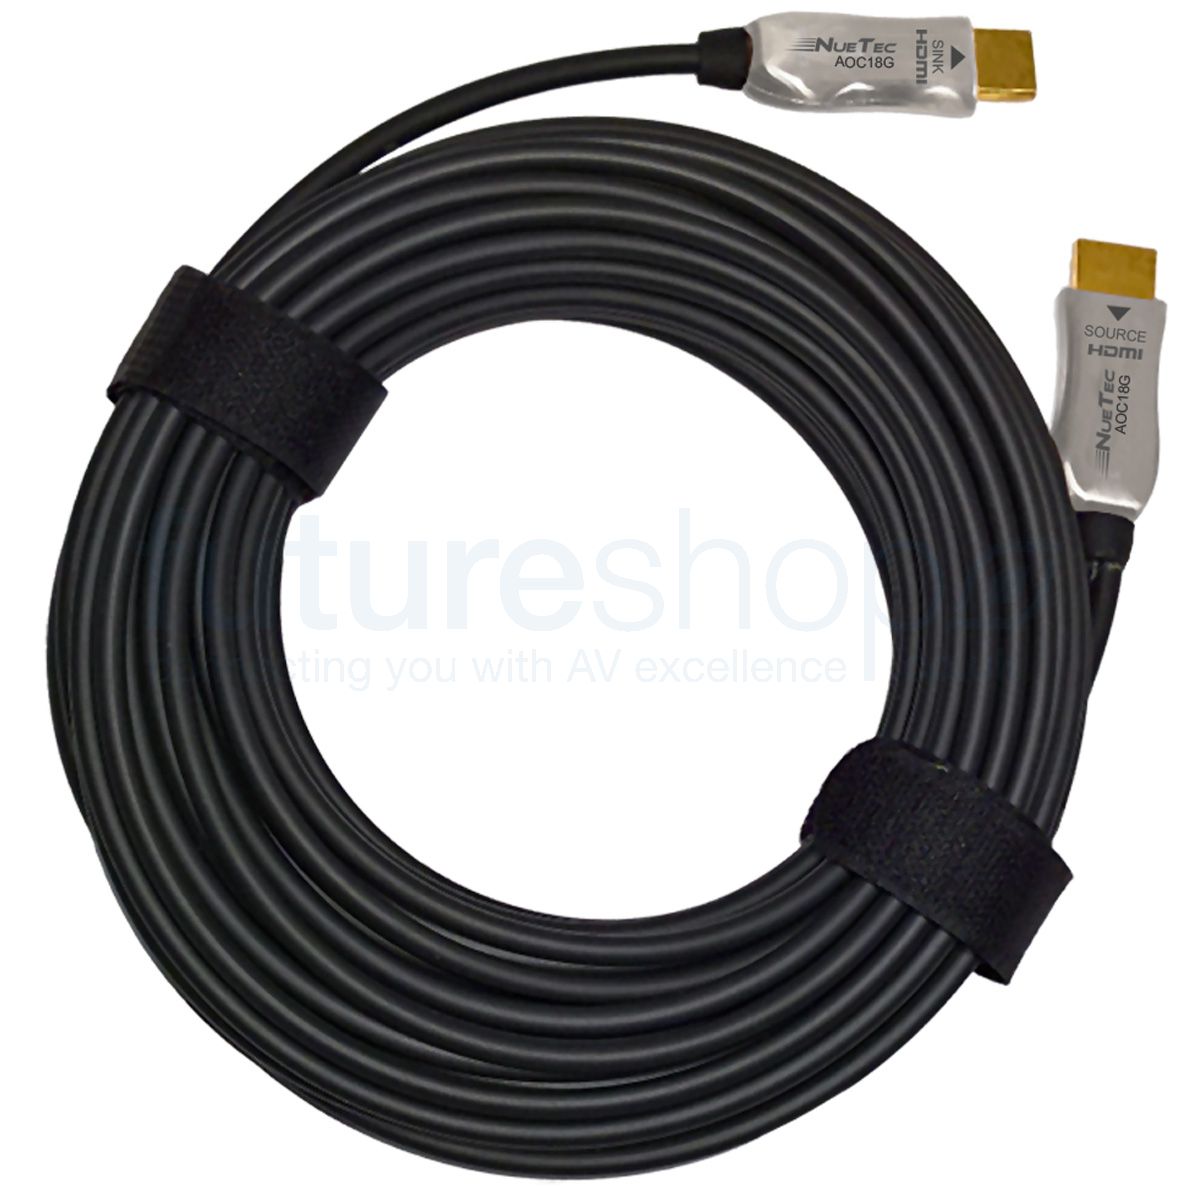 Câble HDMI actif sur fibre optique 18.2 Gbps - FIBRE OPTIC CABLE ACTIF